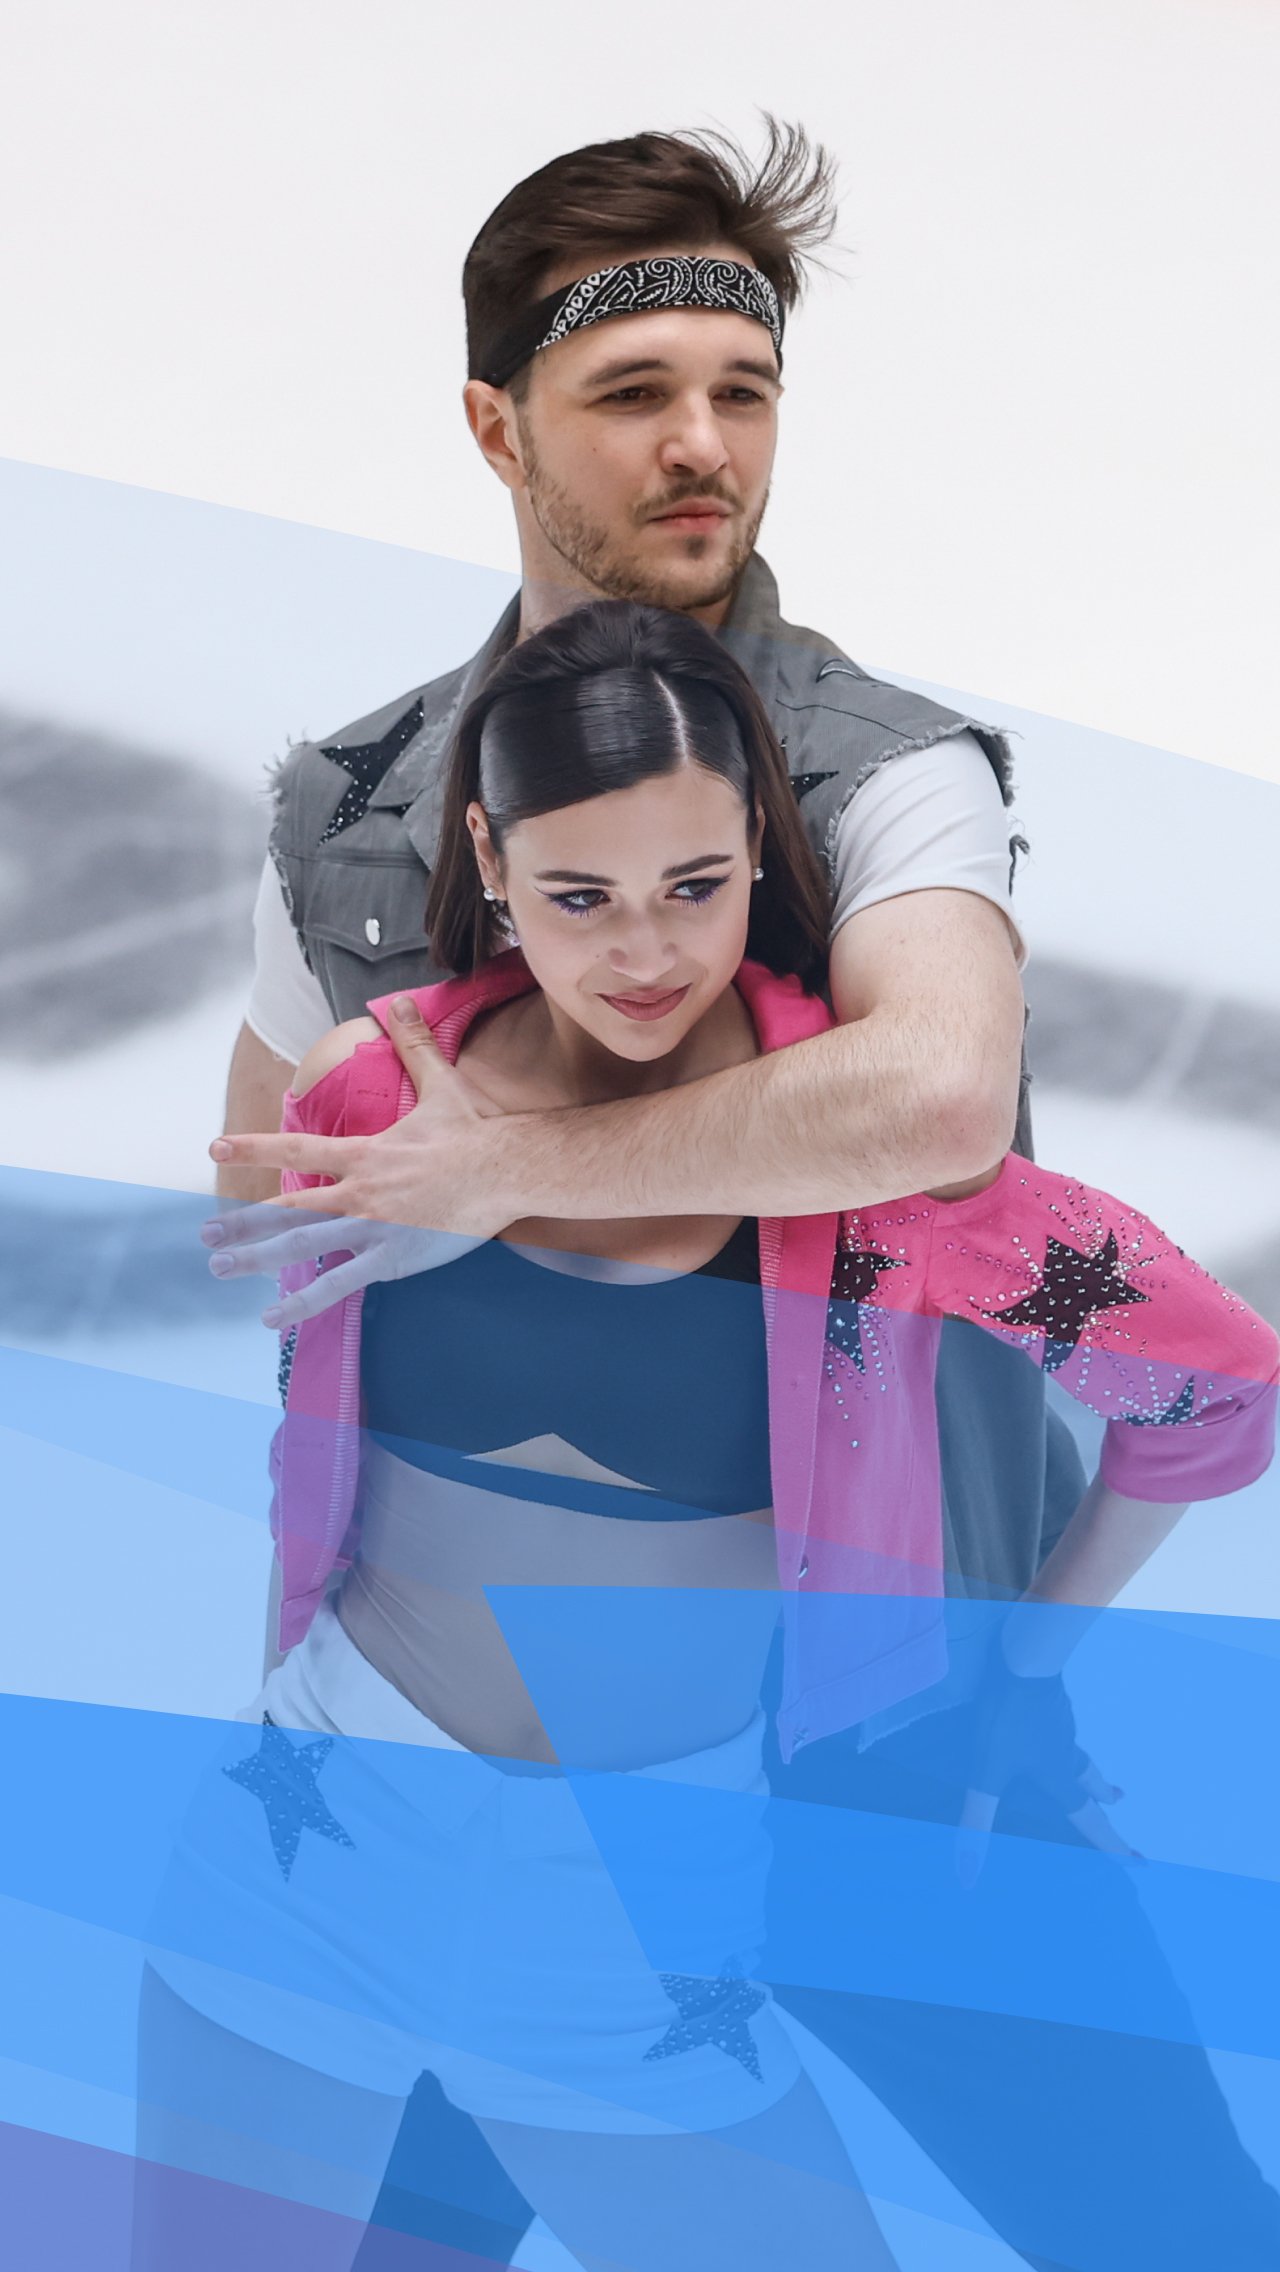 Вид спорта: фигурное катание (танцы на льду)